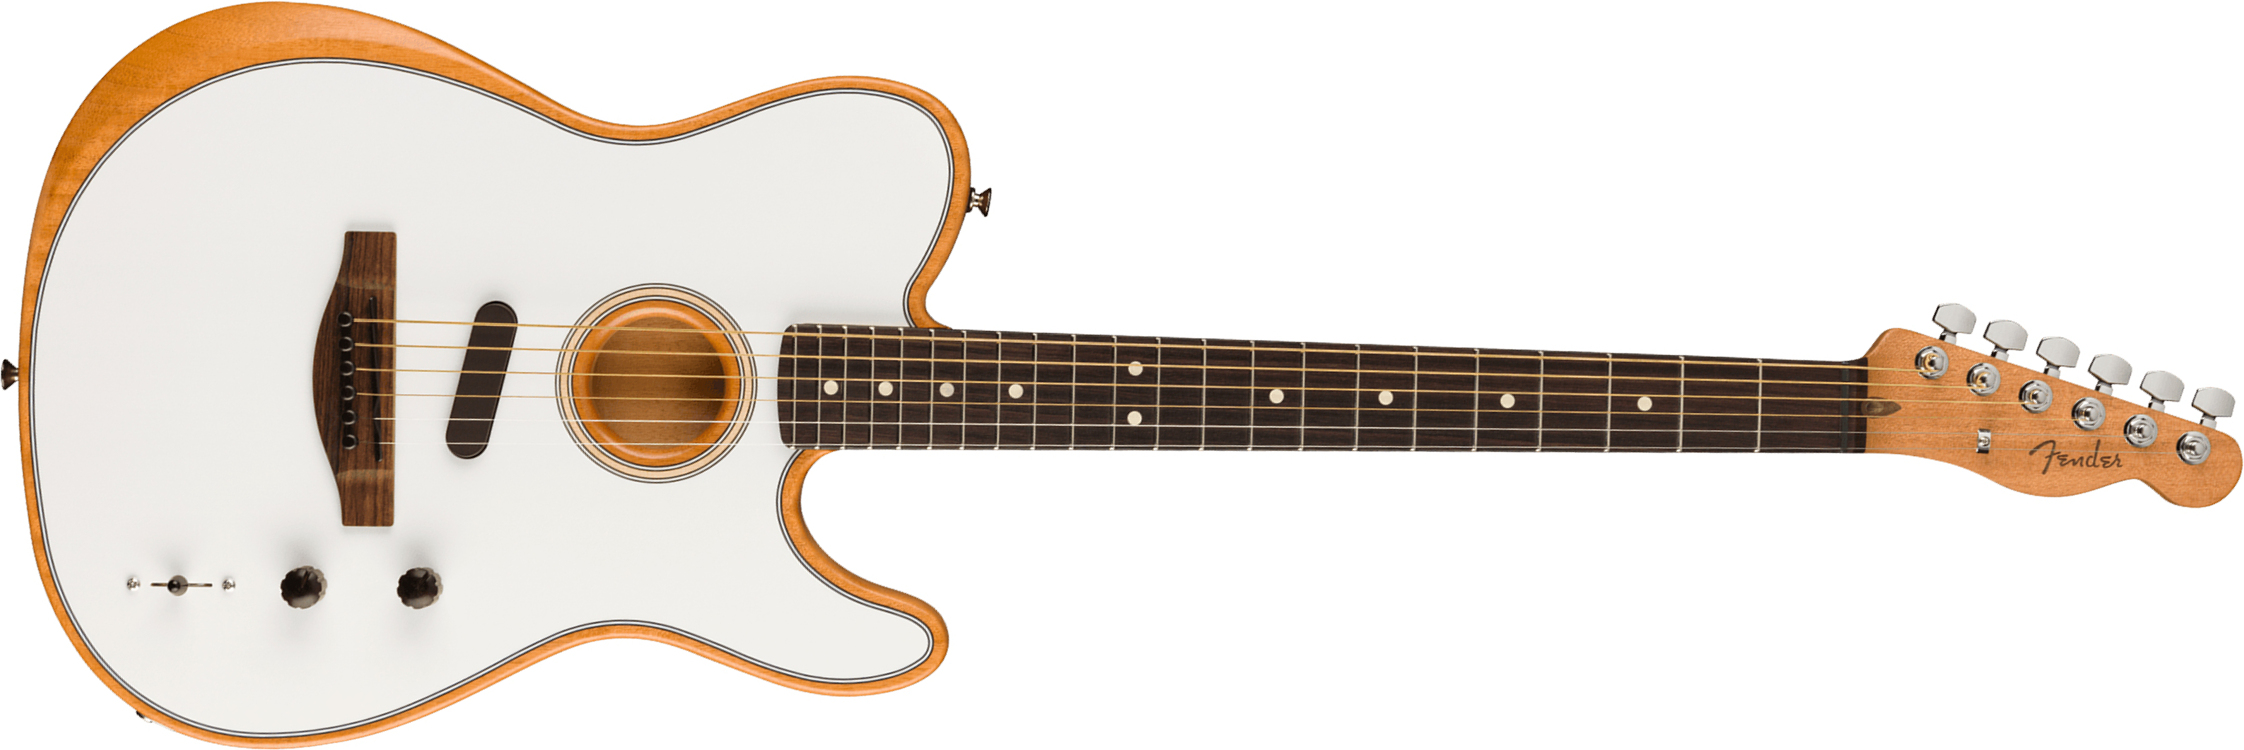 Fender Acoustasonic Tele Player Mex Epicea Acajou Rw - Arctic White - Elektro-akoestische gitaar - Main picture